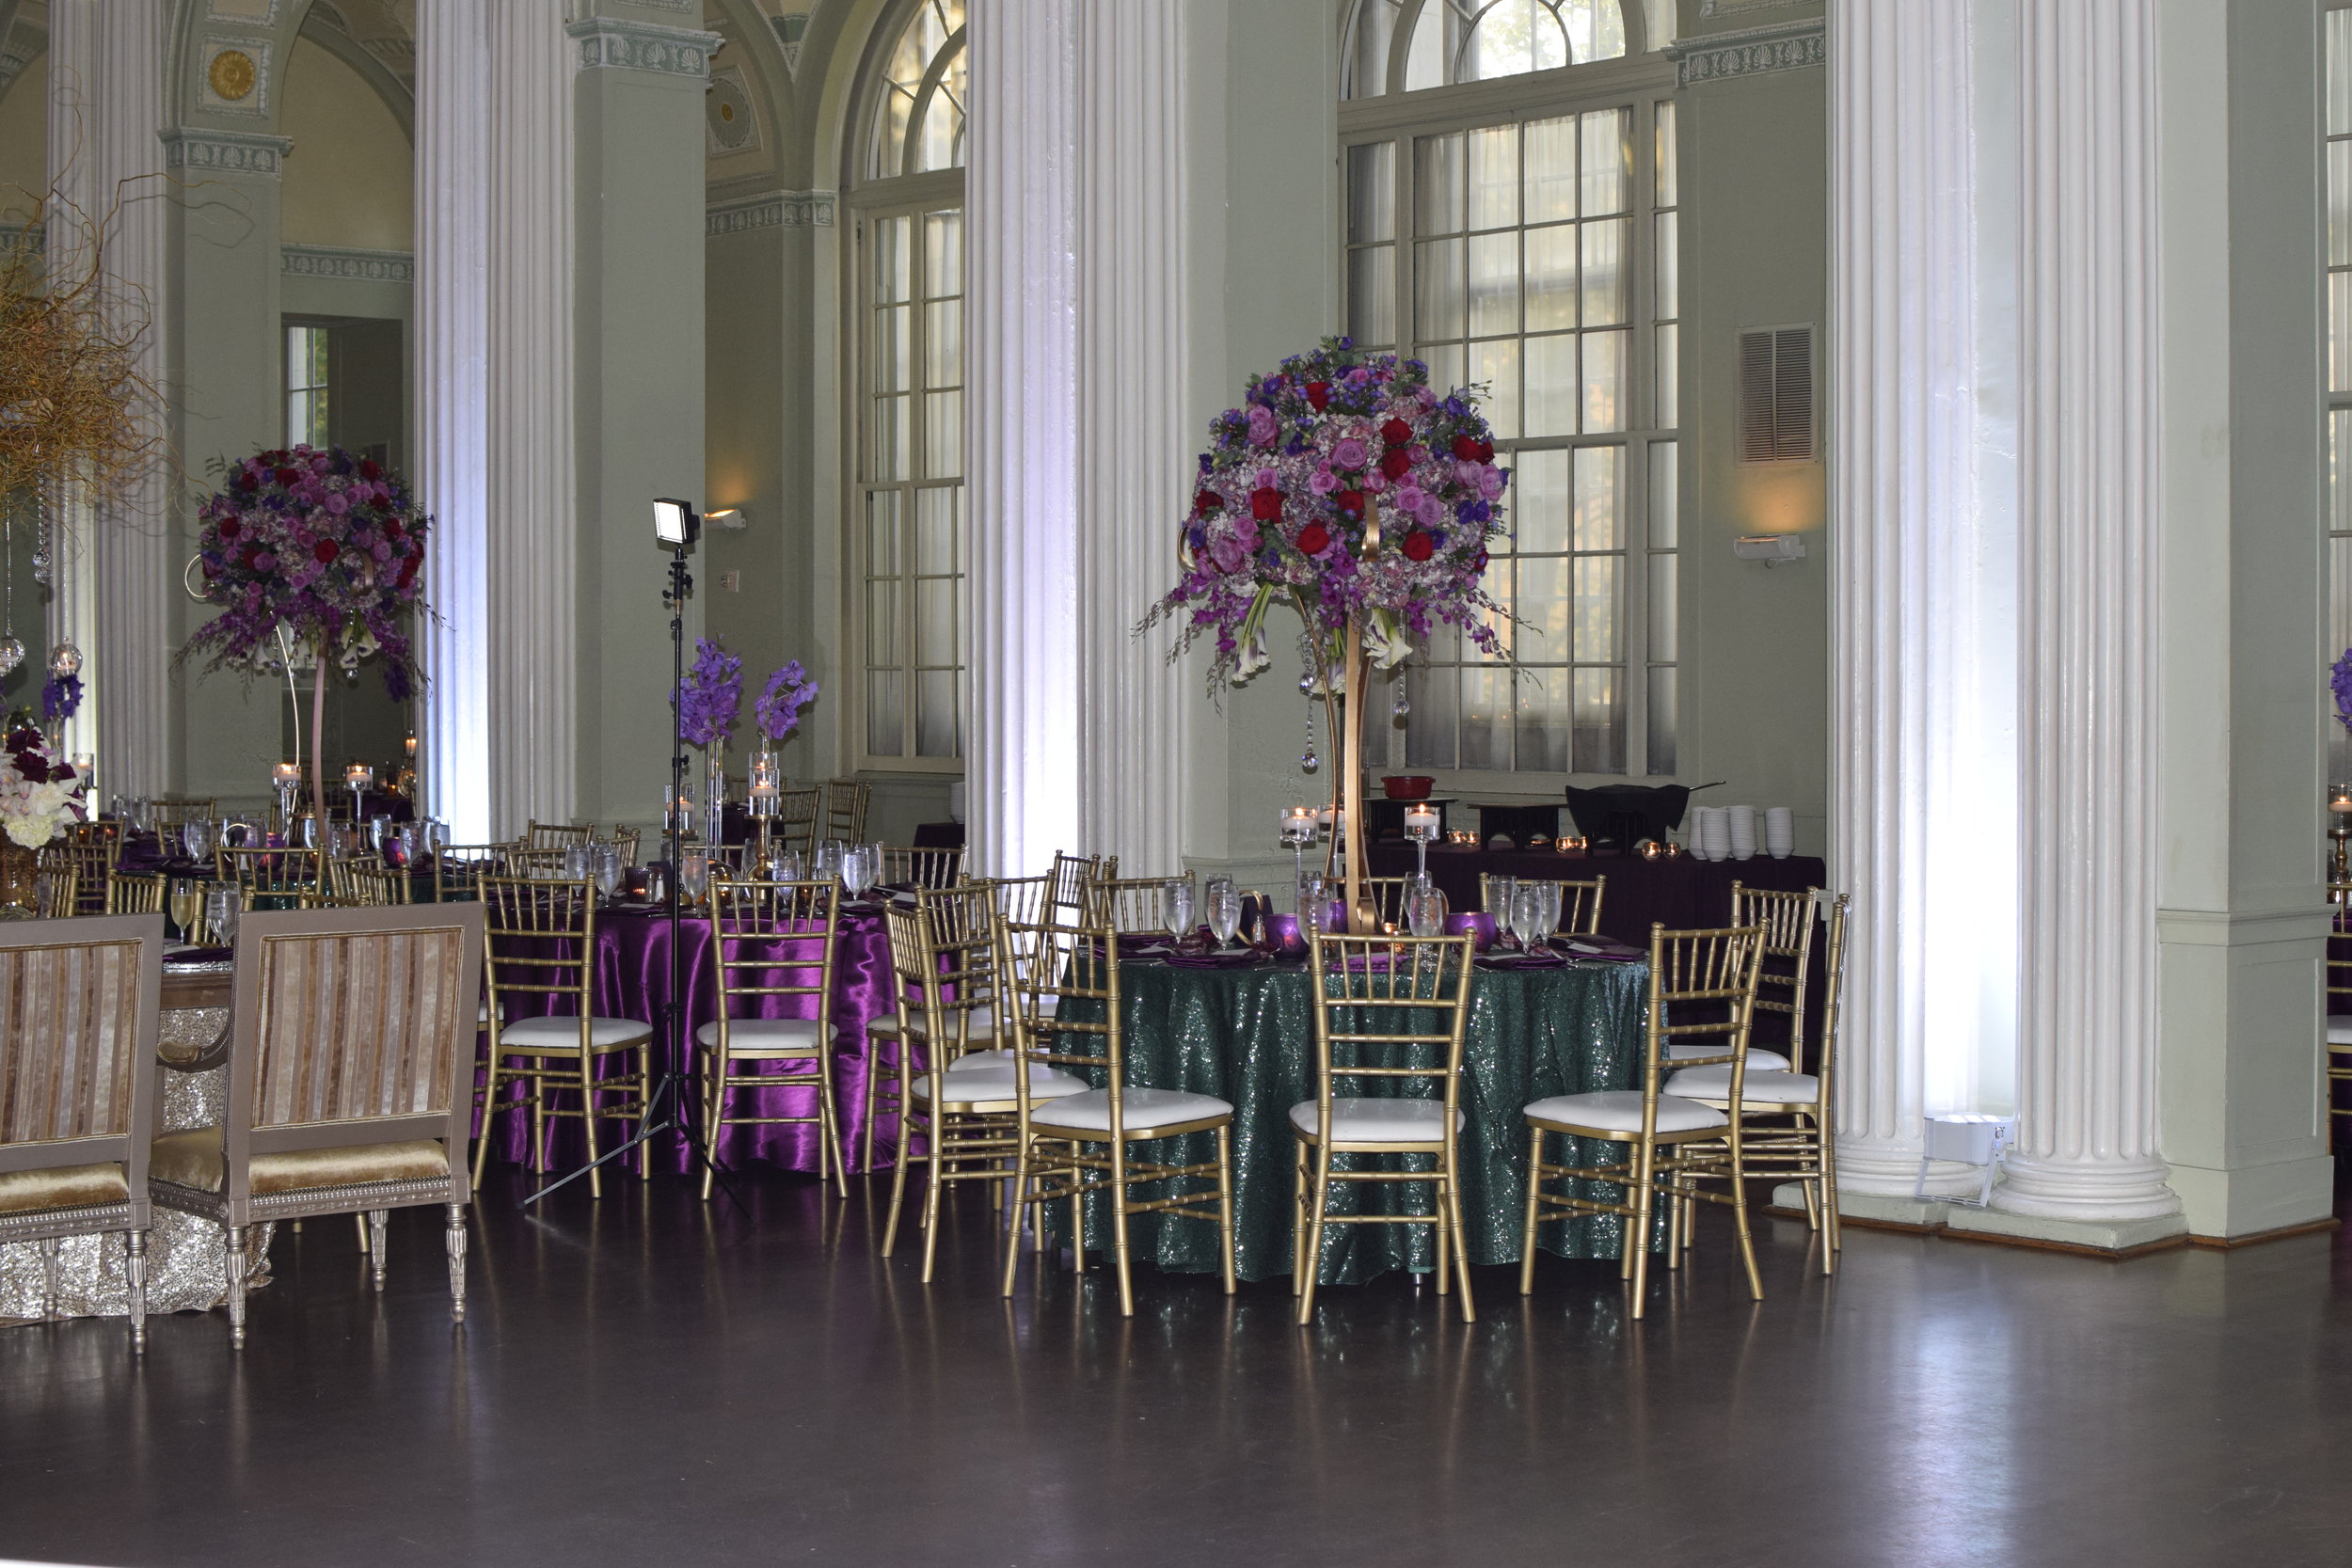 10-02-16 Emanuel Wedding - Biltmore Ballrooms, Atlanta GA (6).JPG